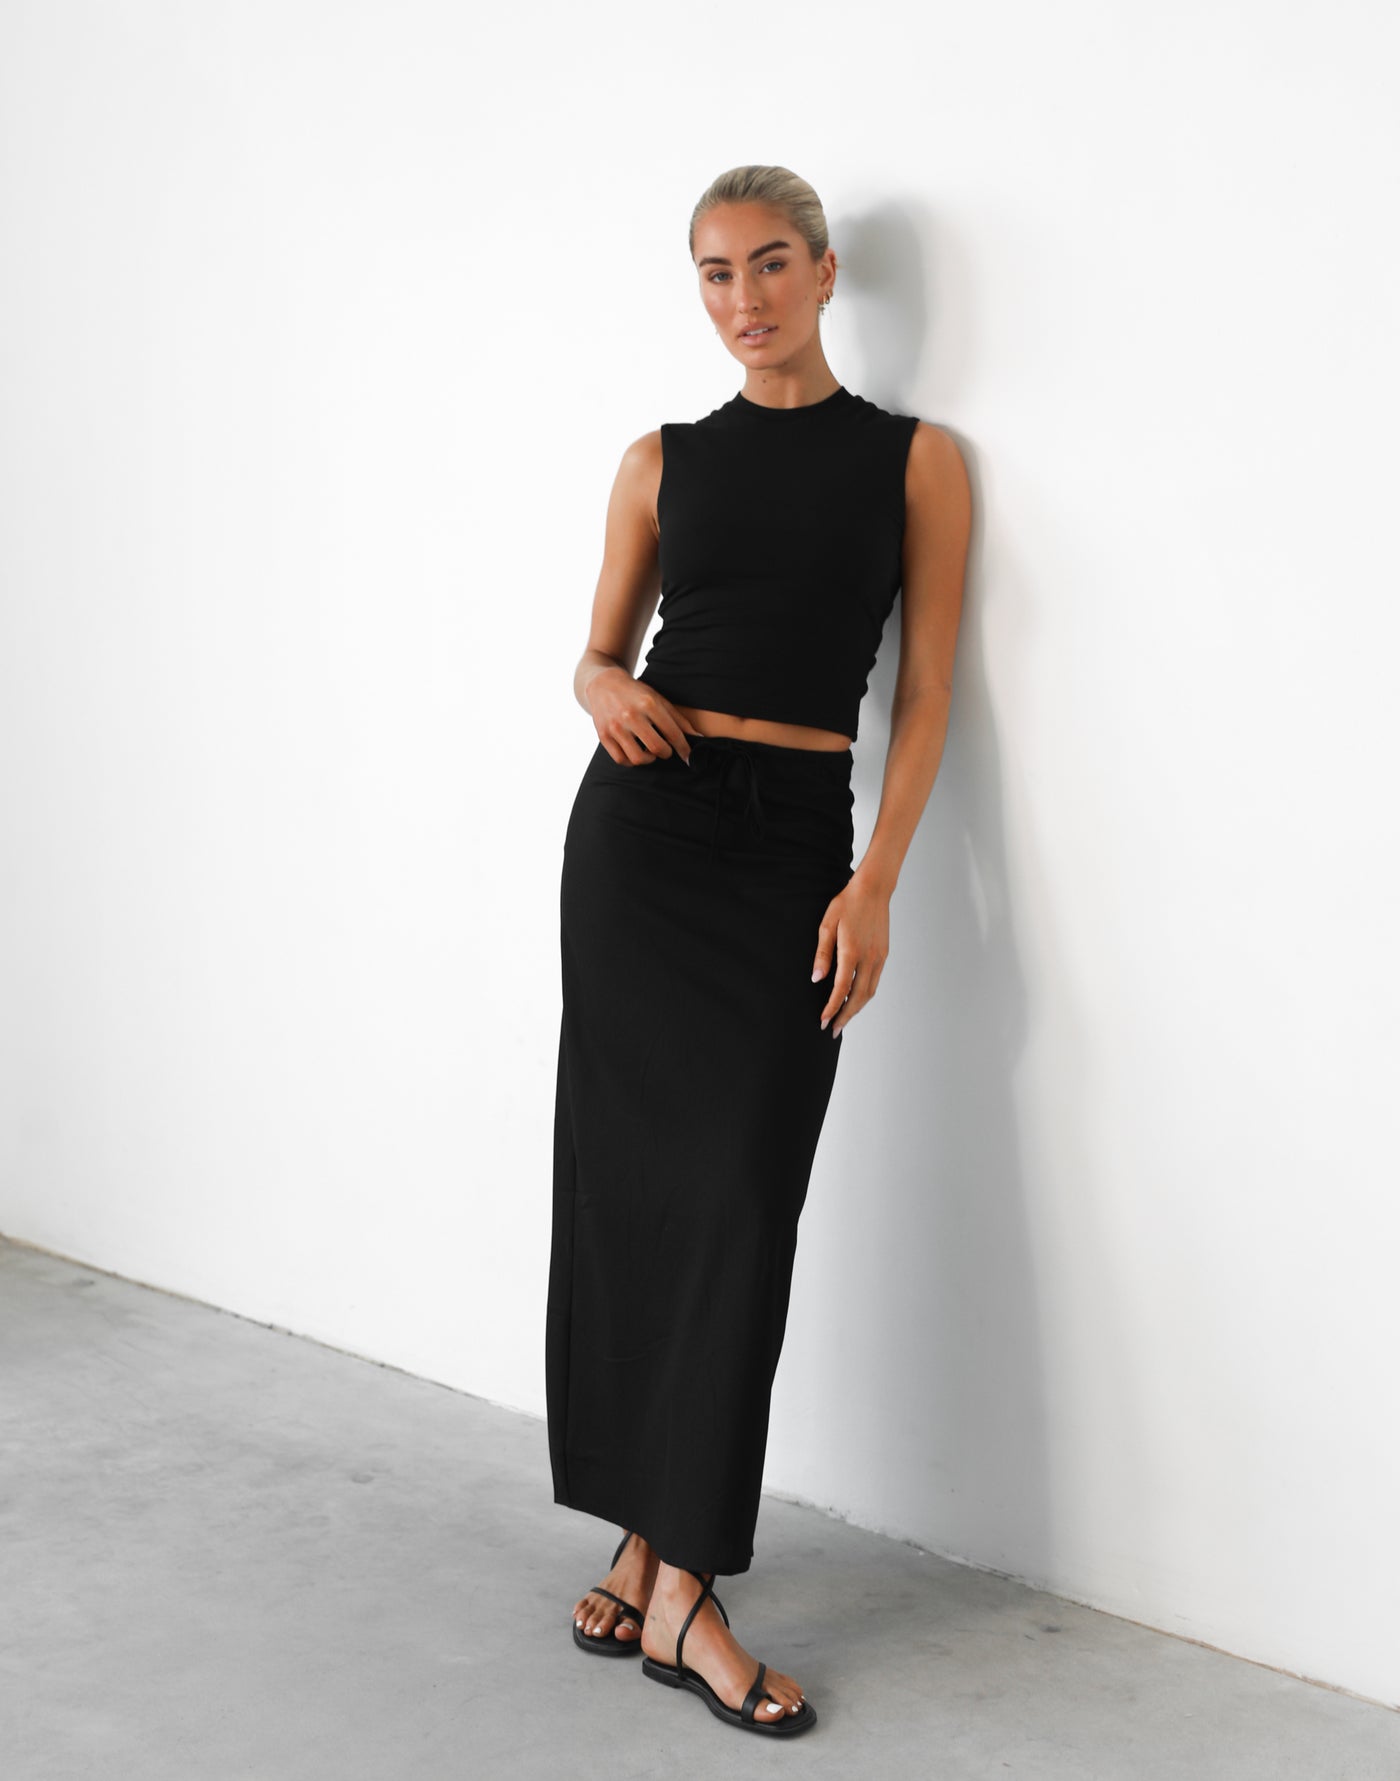 Darna Maxi Skirt (Black) - Adjustable Waist Linen Maxi Skirt - Women's Skirt - Charcoal Clothing